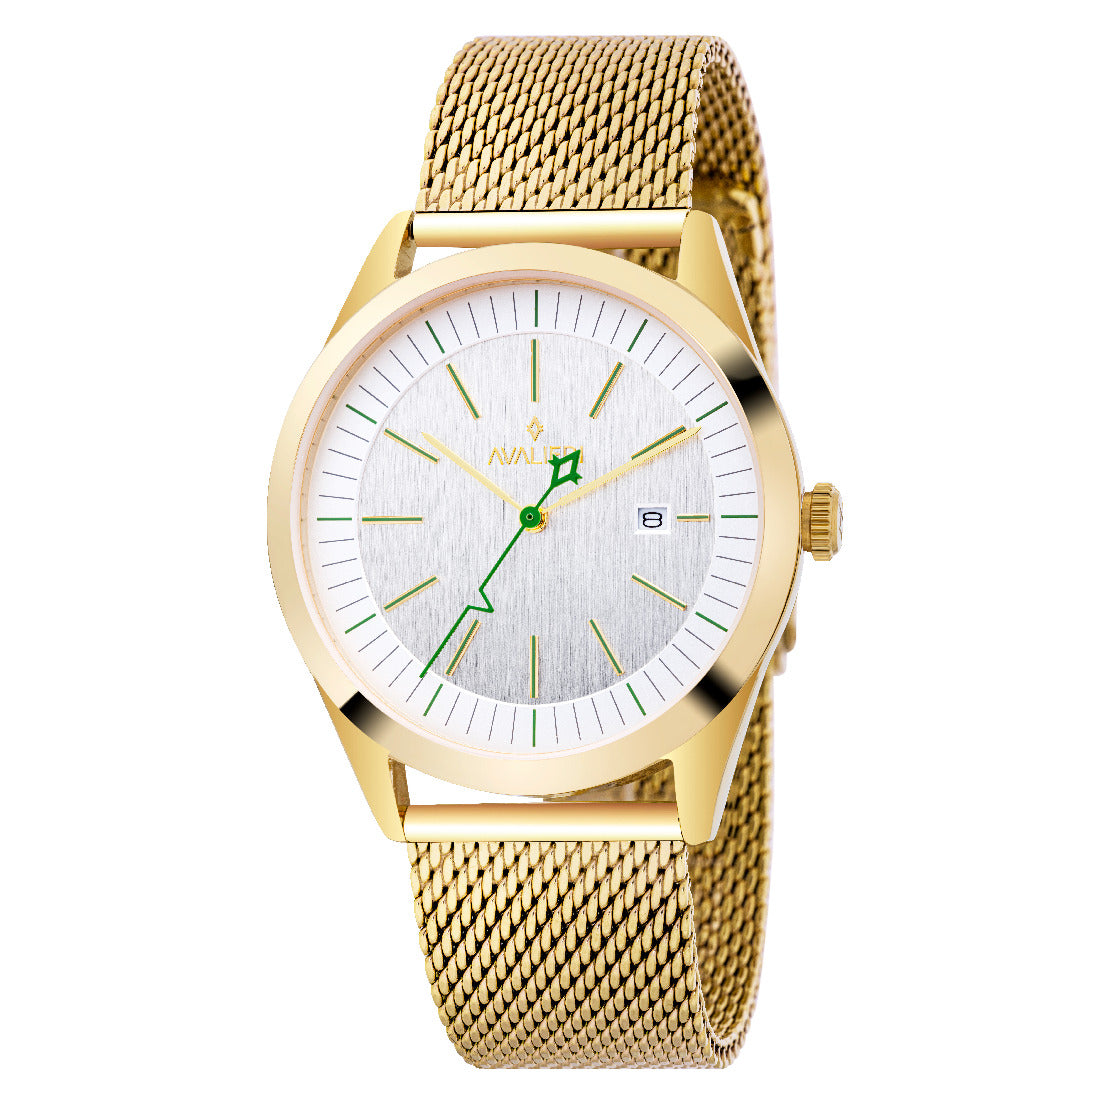 Avalieri Men's Quartz Watch, White Dial - AV-2535B